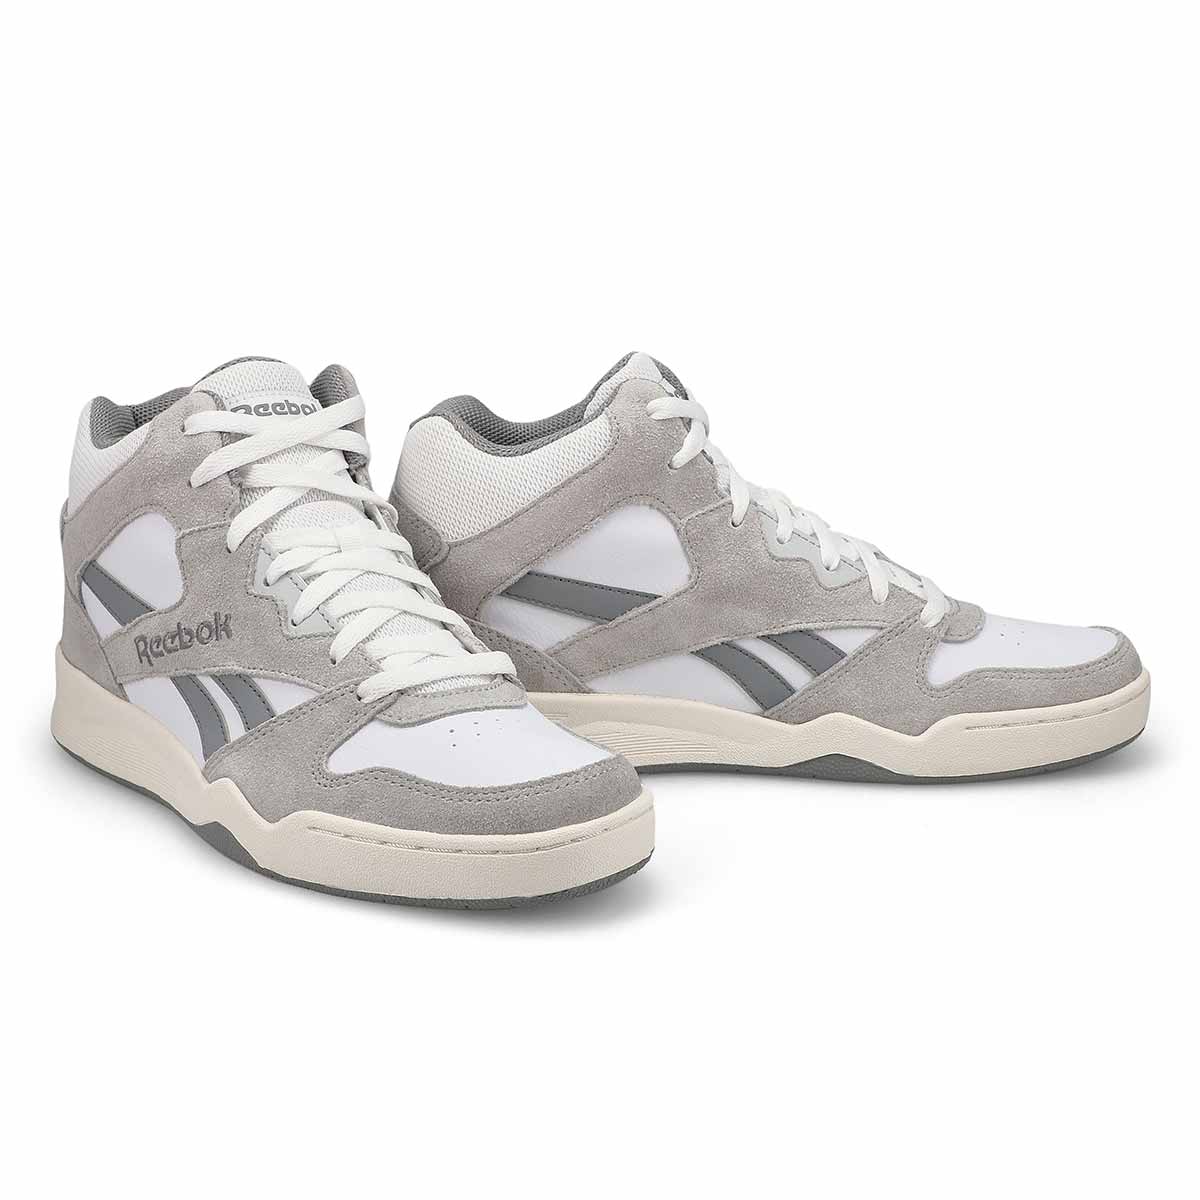 Men's Royal BB4500 H12 Hi Top Sneaker - White/Grey